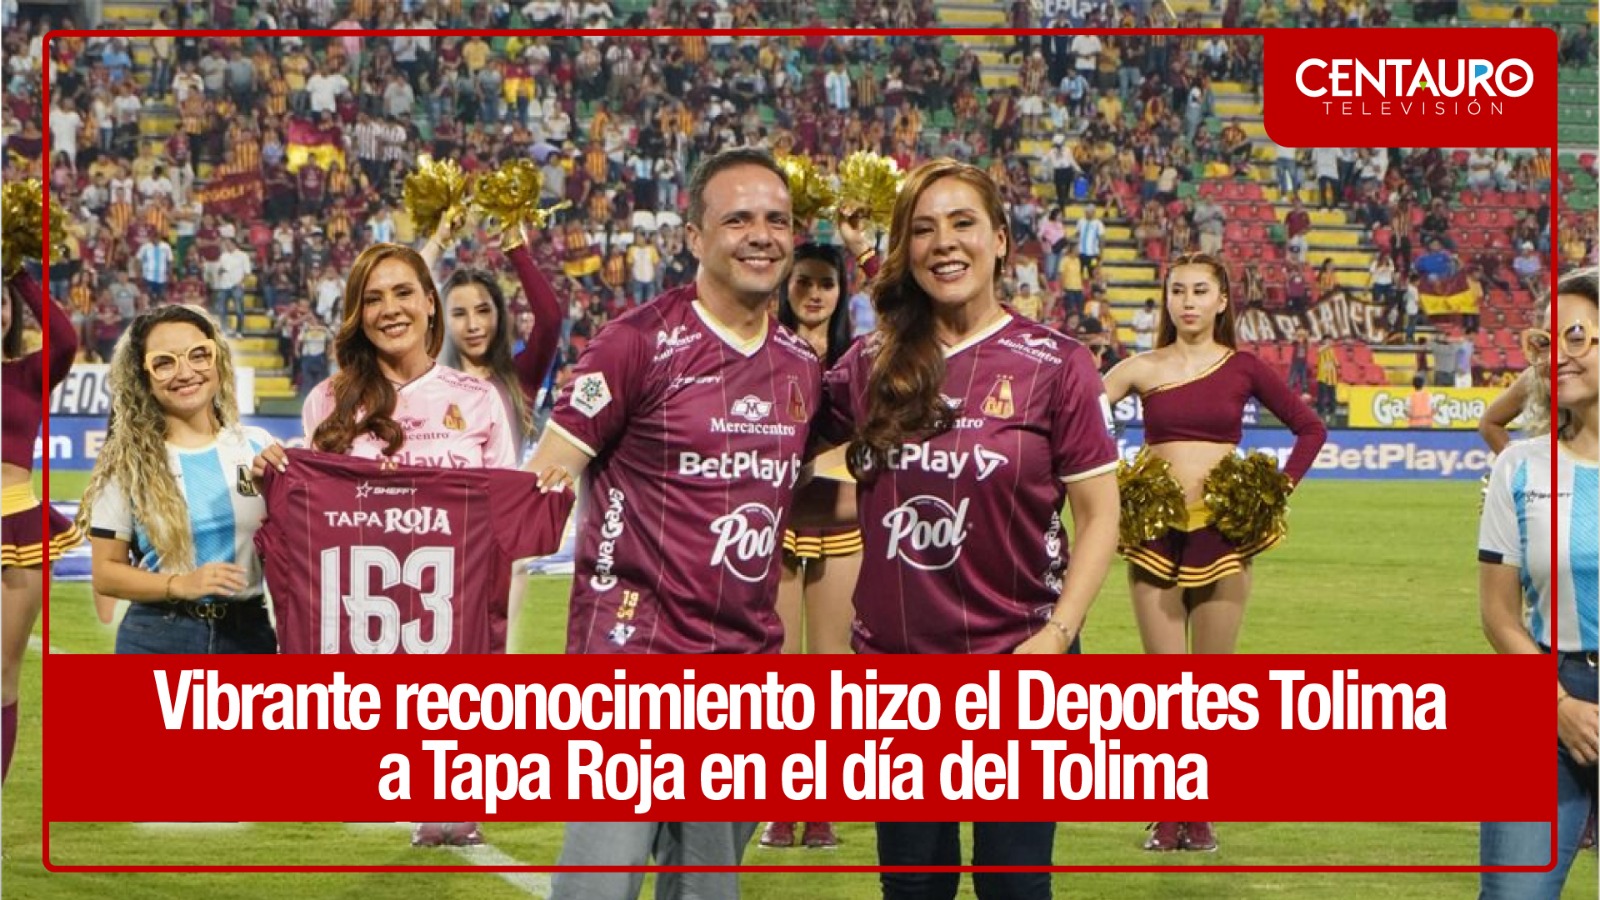 Vibrante reconocimiento hizo el Deportes Tolima a Tapa Roja en el día del Tolima  